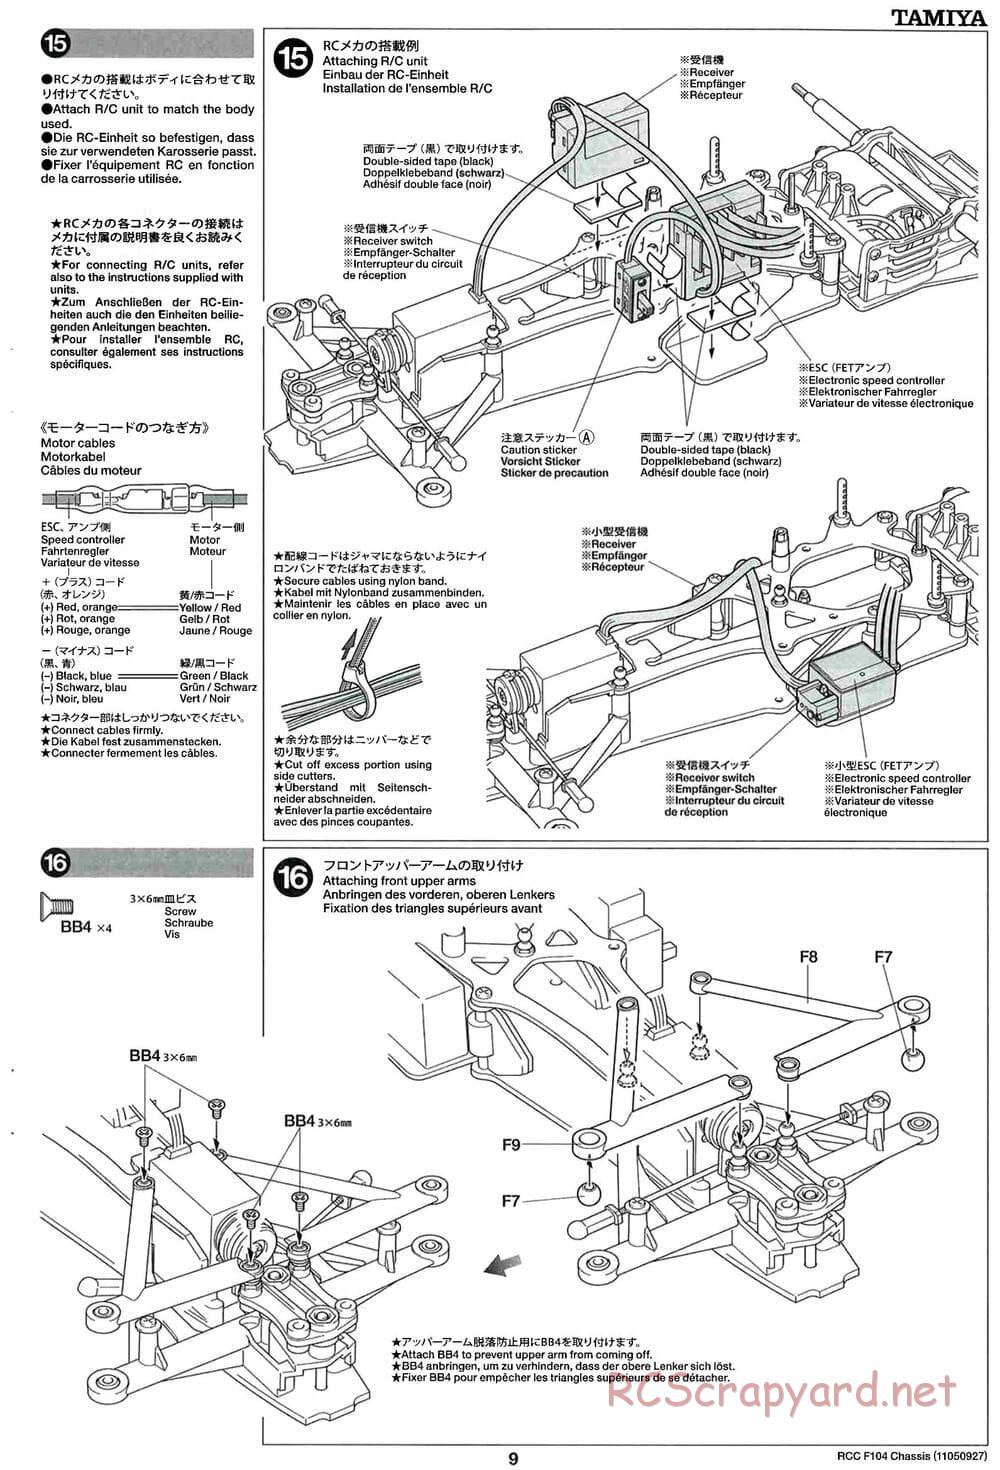 Tamiya - F104 Chassis - Manual - Page 9